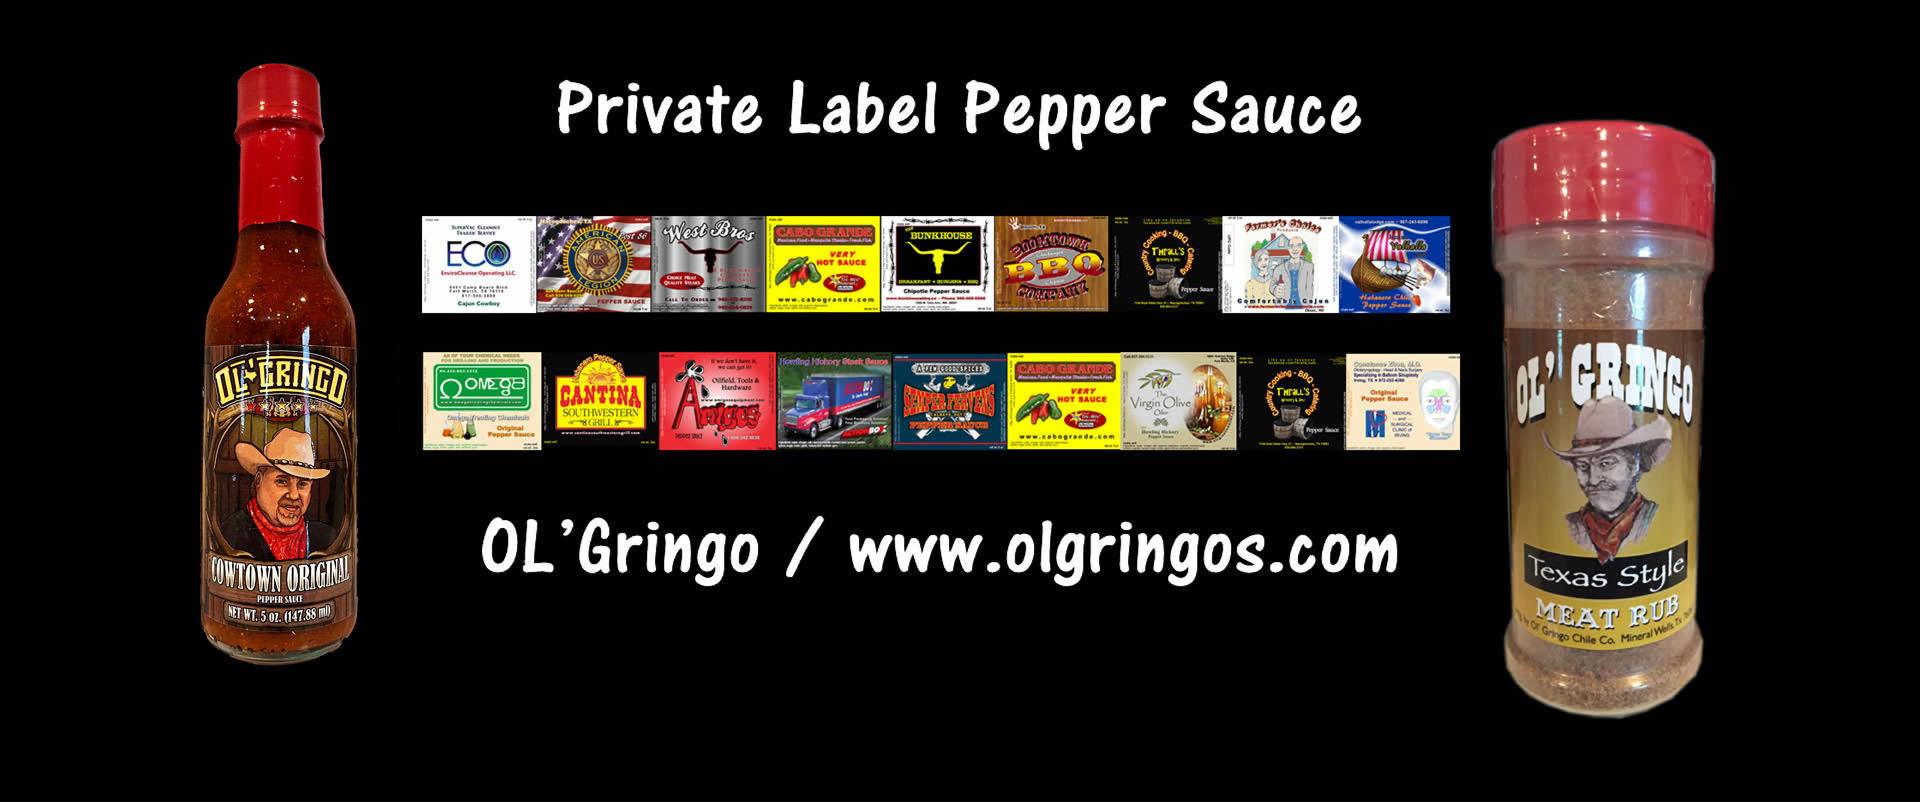 OL'Gringo Pepper Sauce / www.olgringos.com